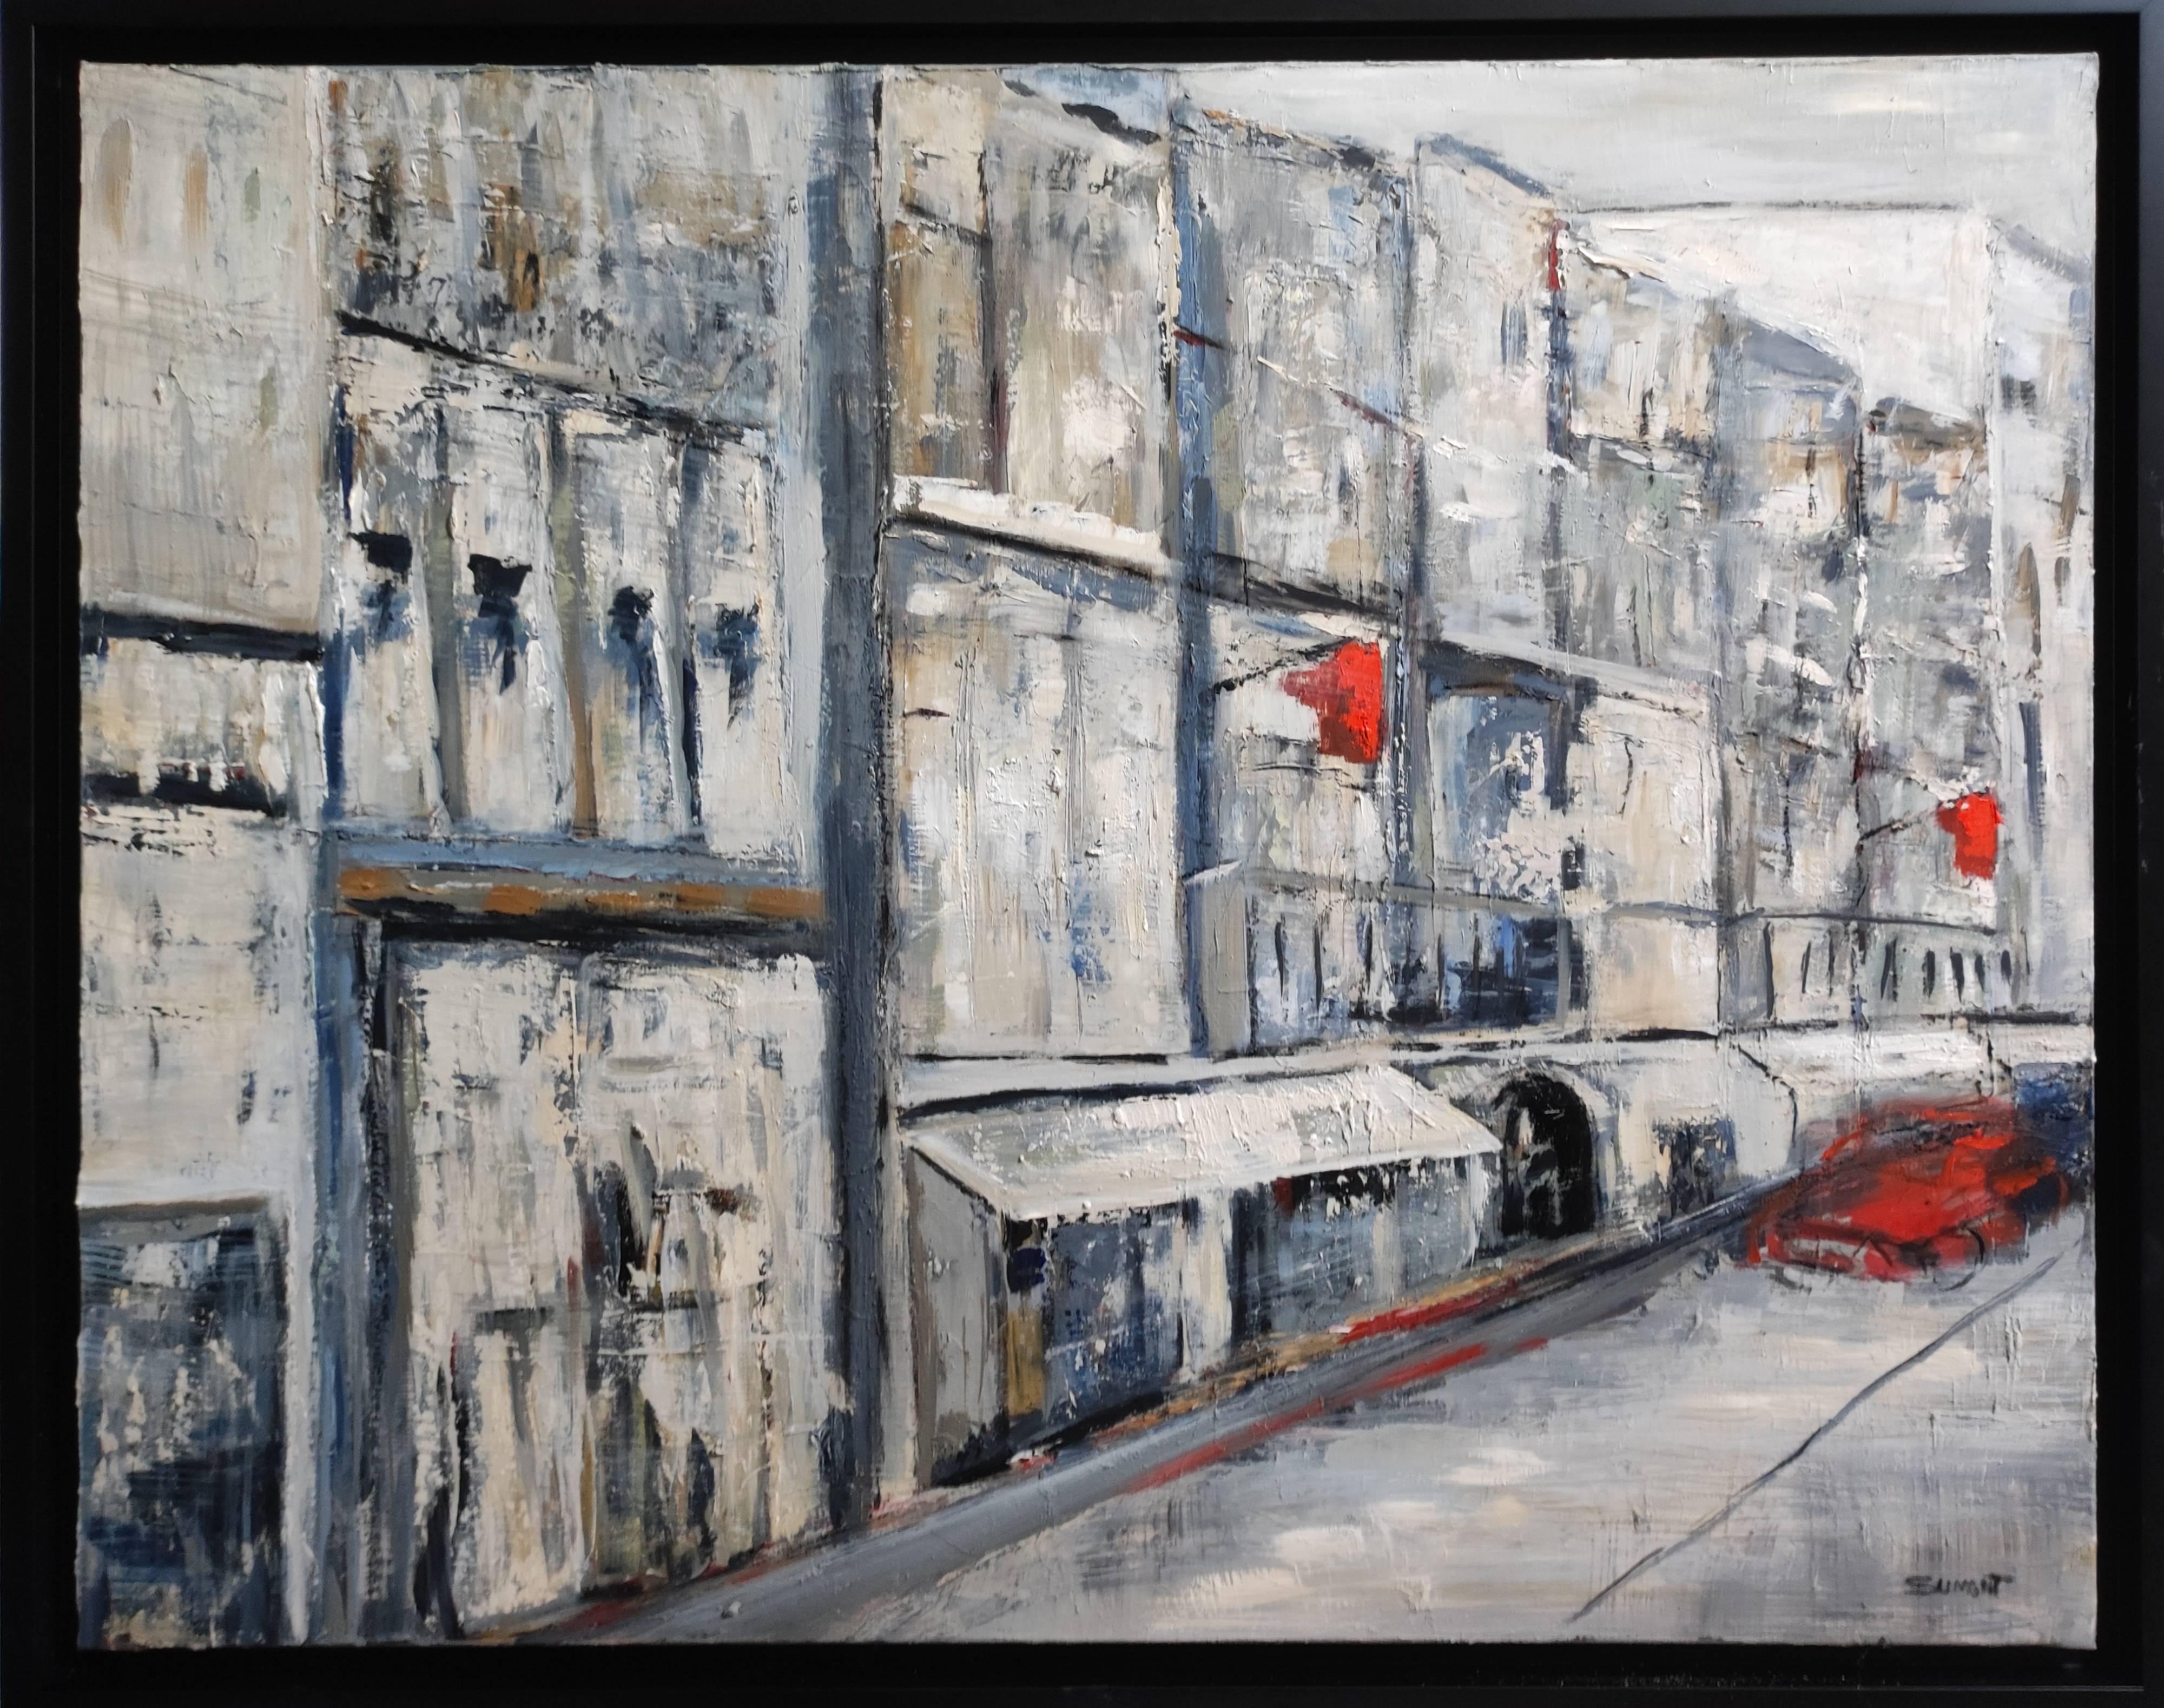 Figurative Painting SOPHIE DUMONT - Paris 2020, huile sur toile, scène de rue, figuration grise, expressionnisme ; texture